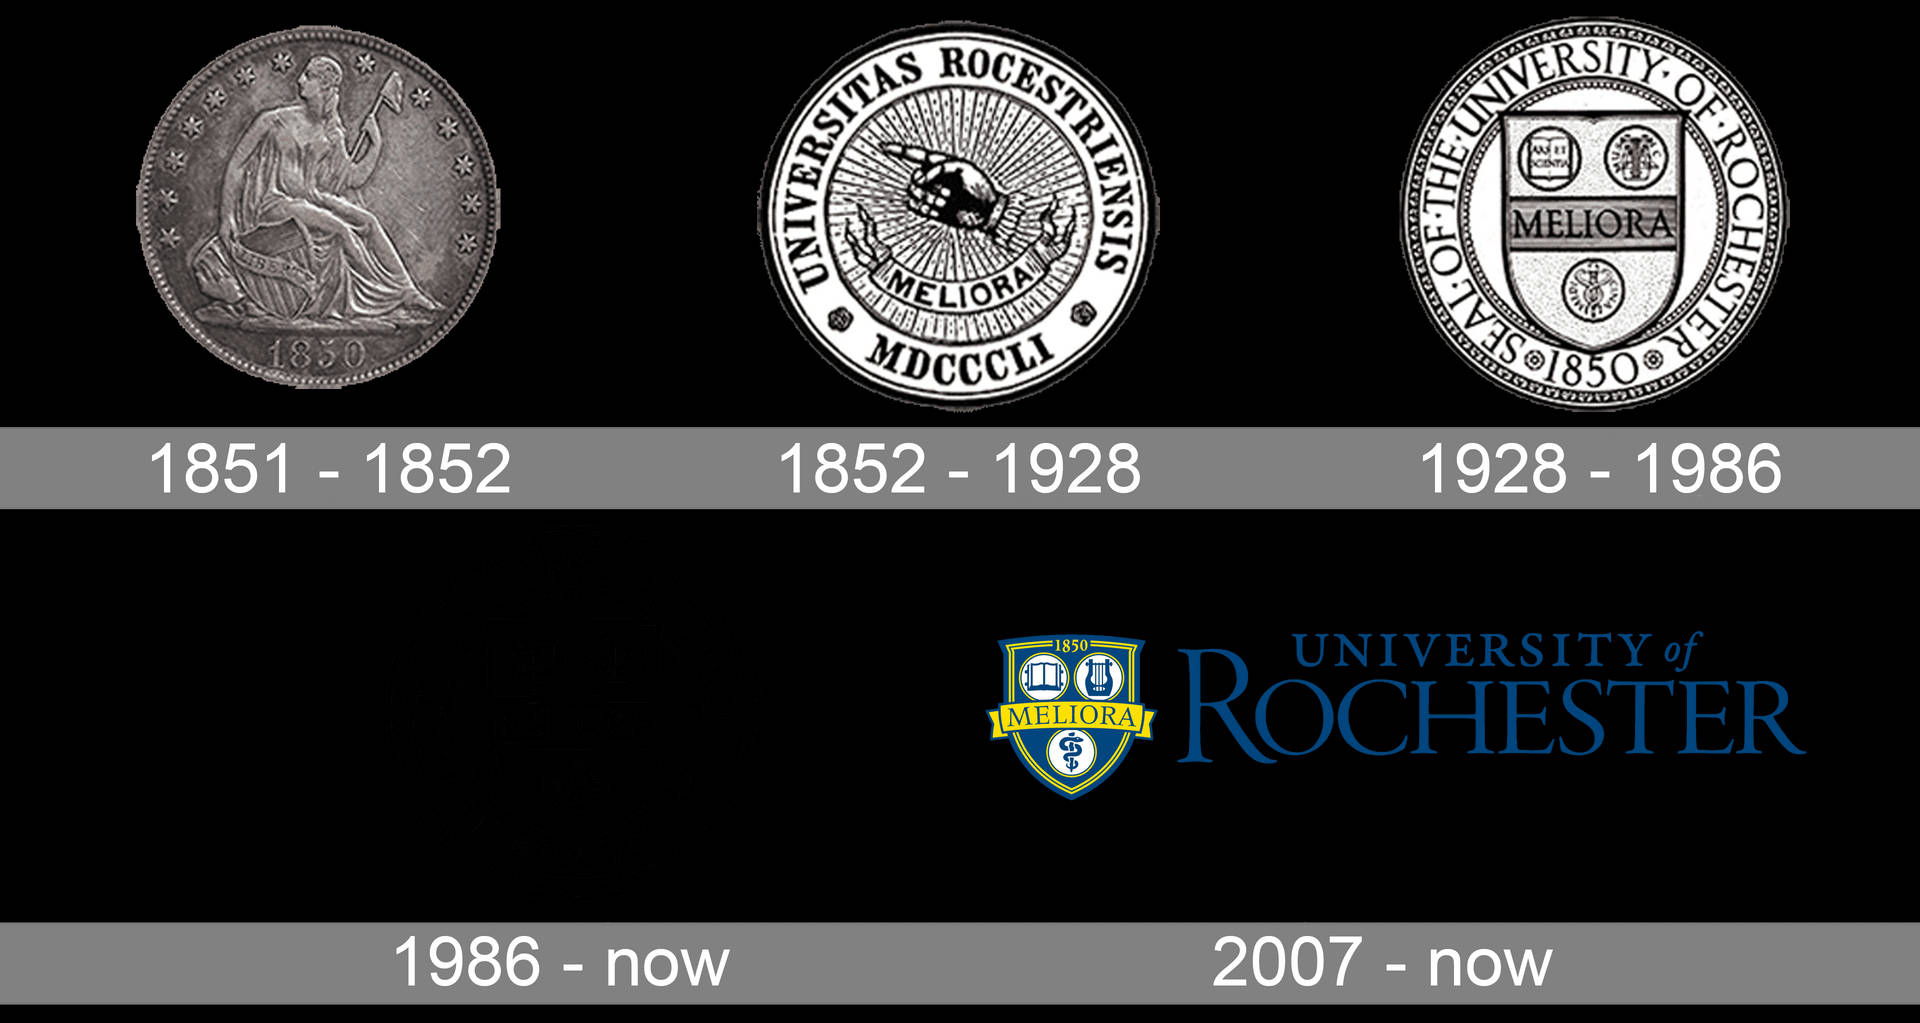 Sériede Logotipos Da Universidade De Rochester. Papel de Parede